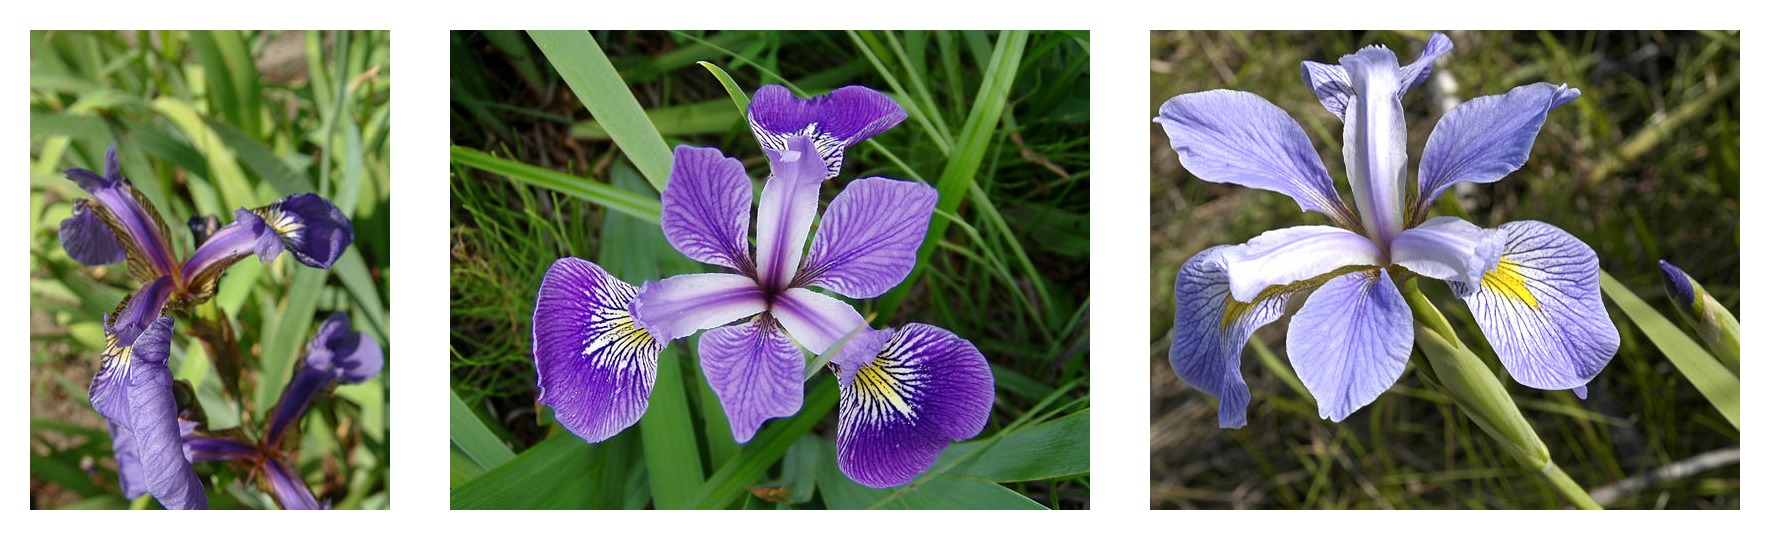 مقایسه هندسه گلبرگ برای سه گونه زنبق: زنبق ستوزا، زنبق ویرجینیکا و زنبق ورسیکالر